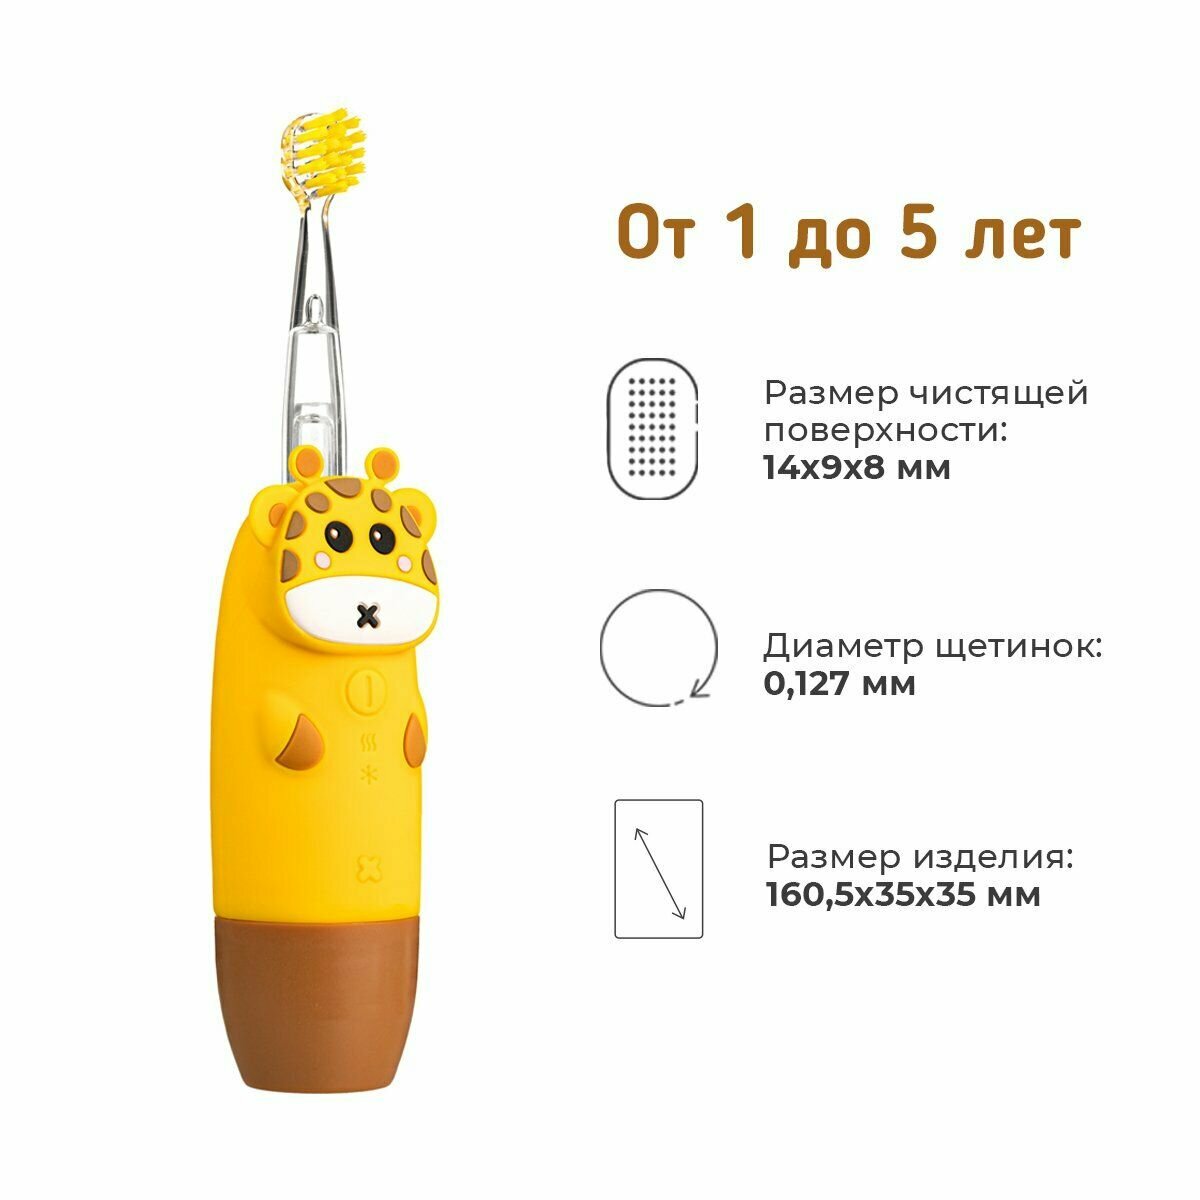 Электрическая зубная щетка Revyline RL025 Baby